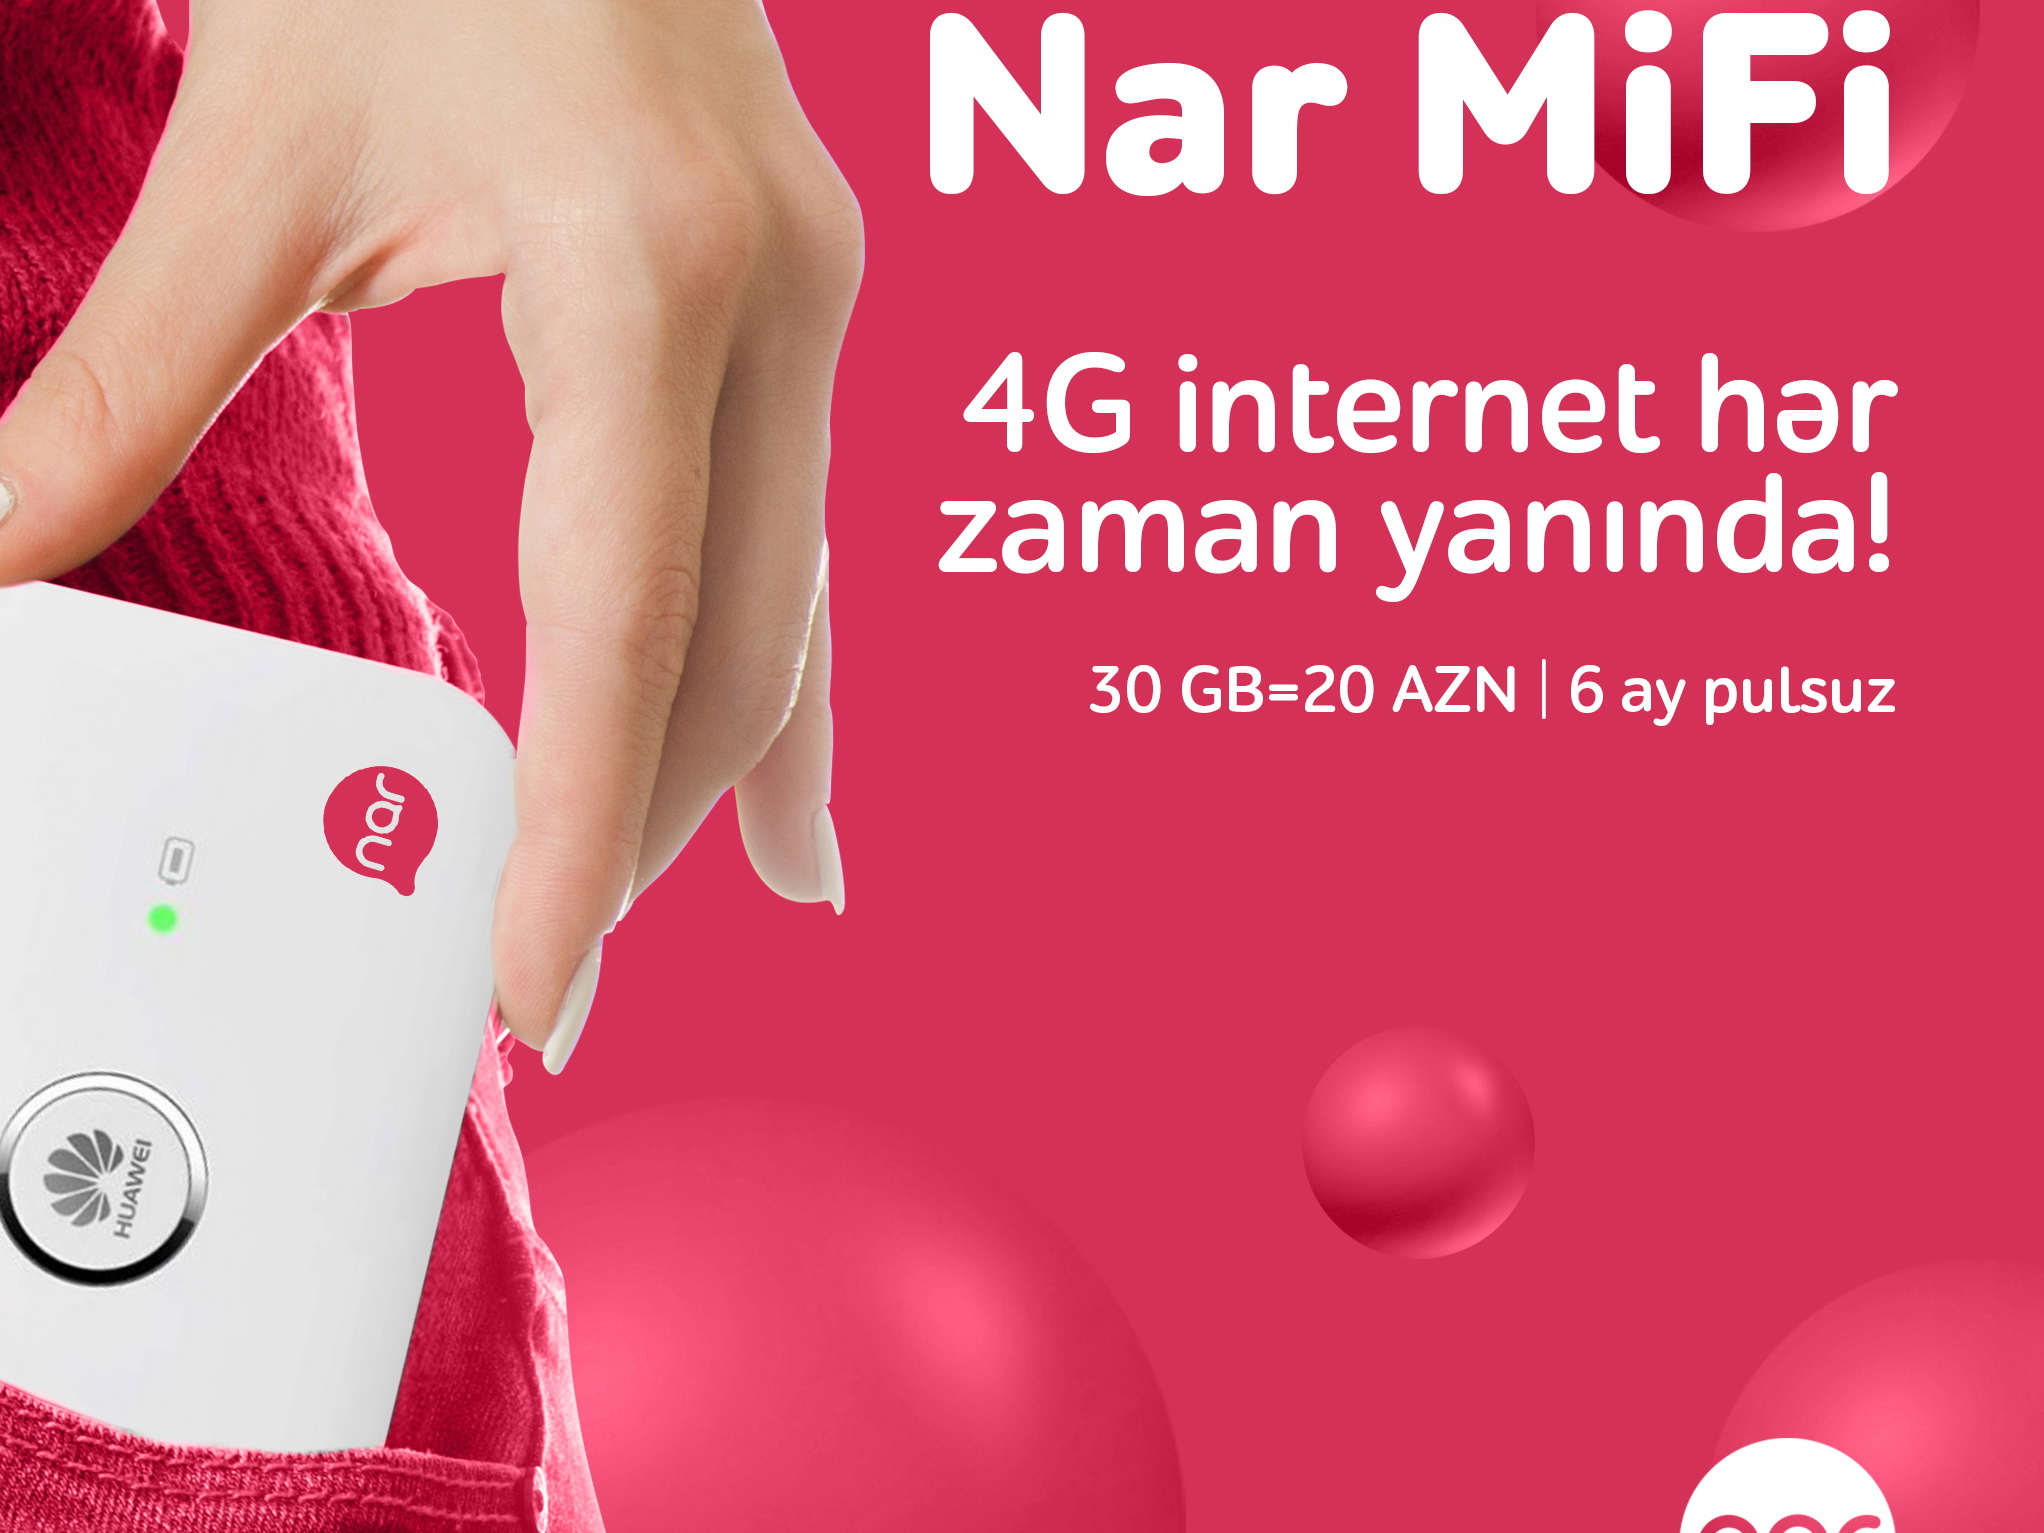 Купите пакет Nar MiFi и получите до 6 месяцев бесплатного Интернета